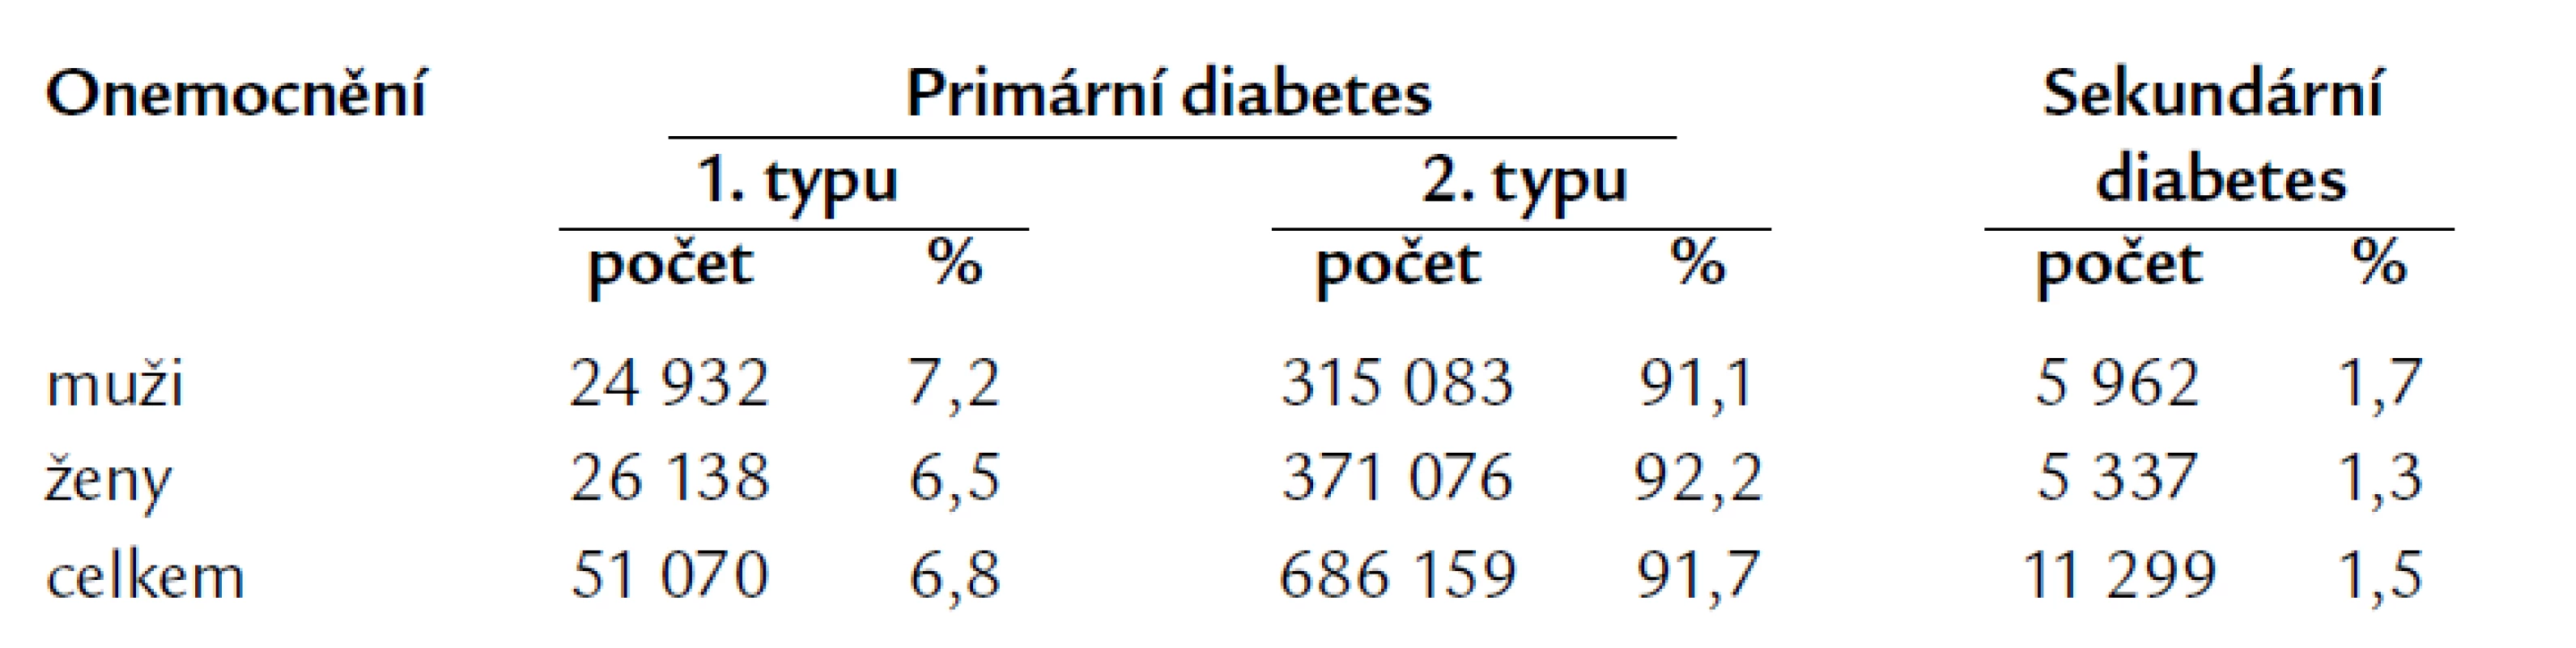 Výskyt diabetu v ČR v roce 2006 (ÚZIS).